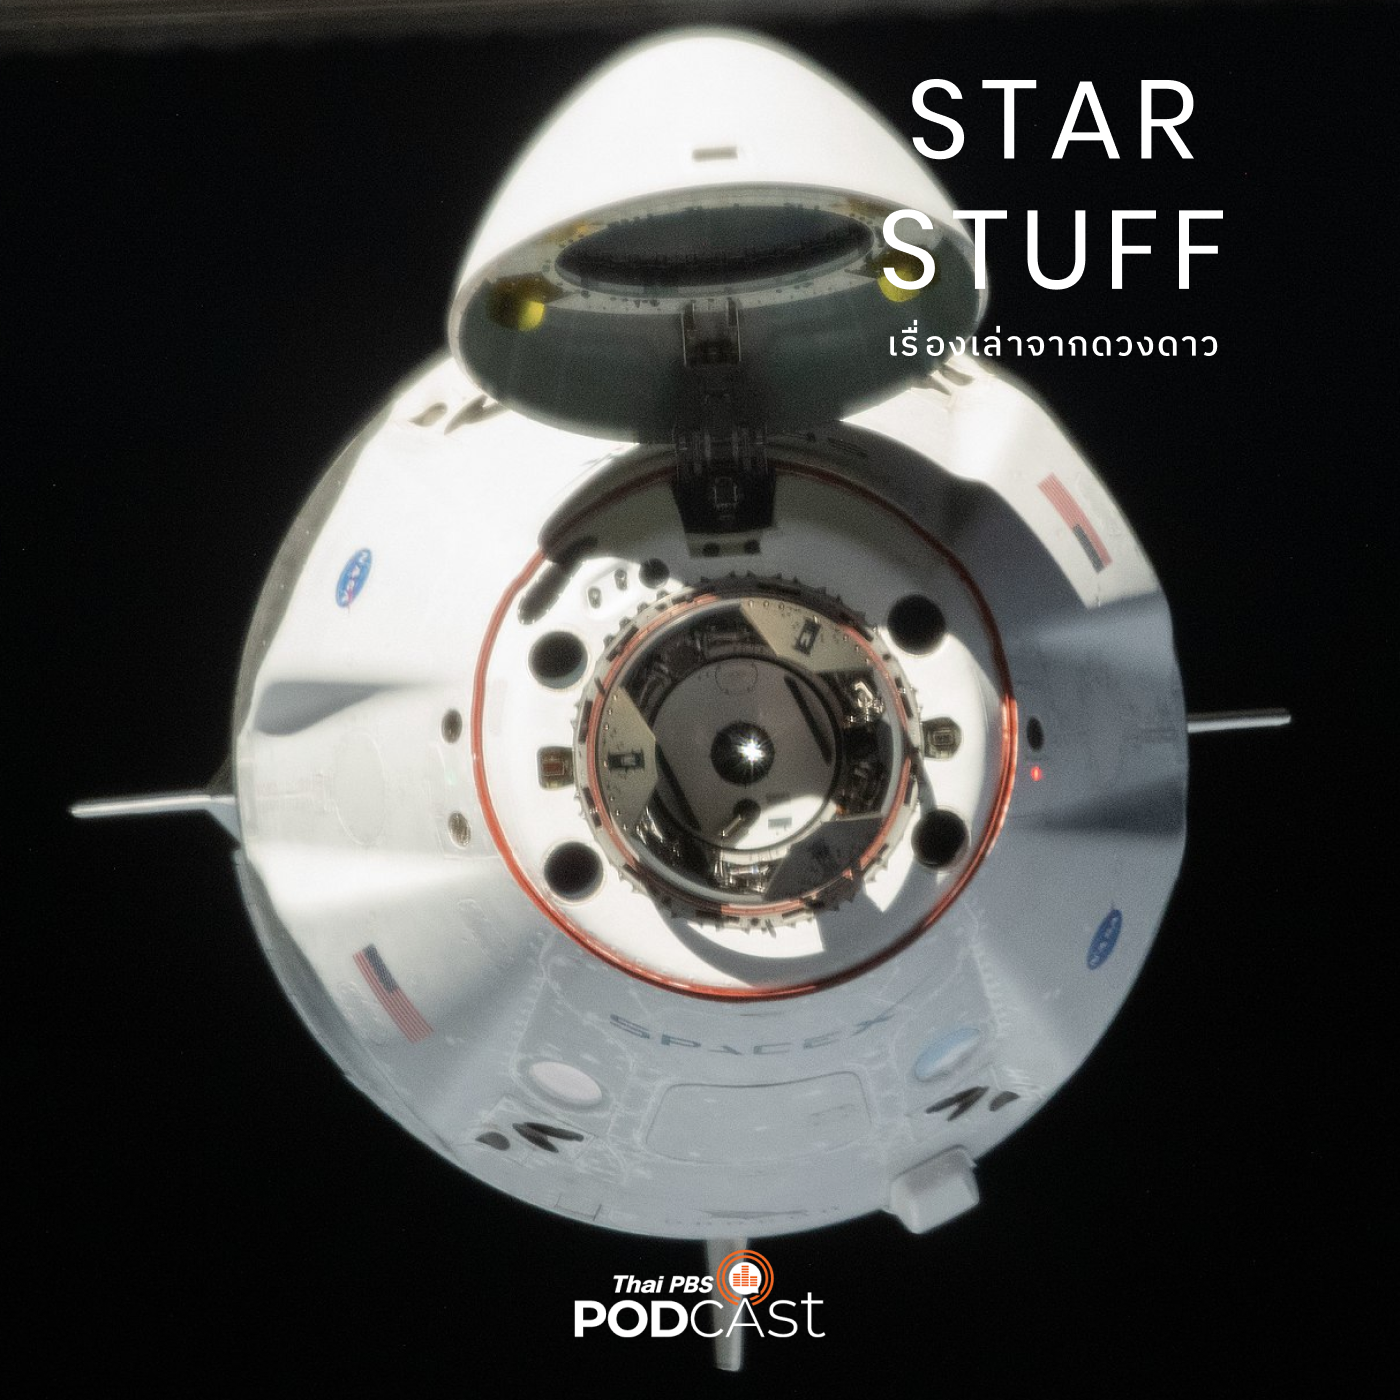 Starstuff เรื่องเล่าจากดวงดาว EP. 96: บริษัทอวกาศเอกชนมาจากไหน